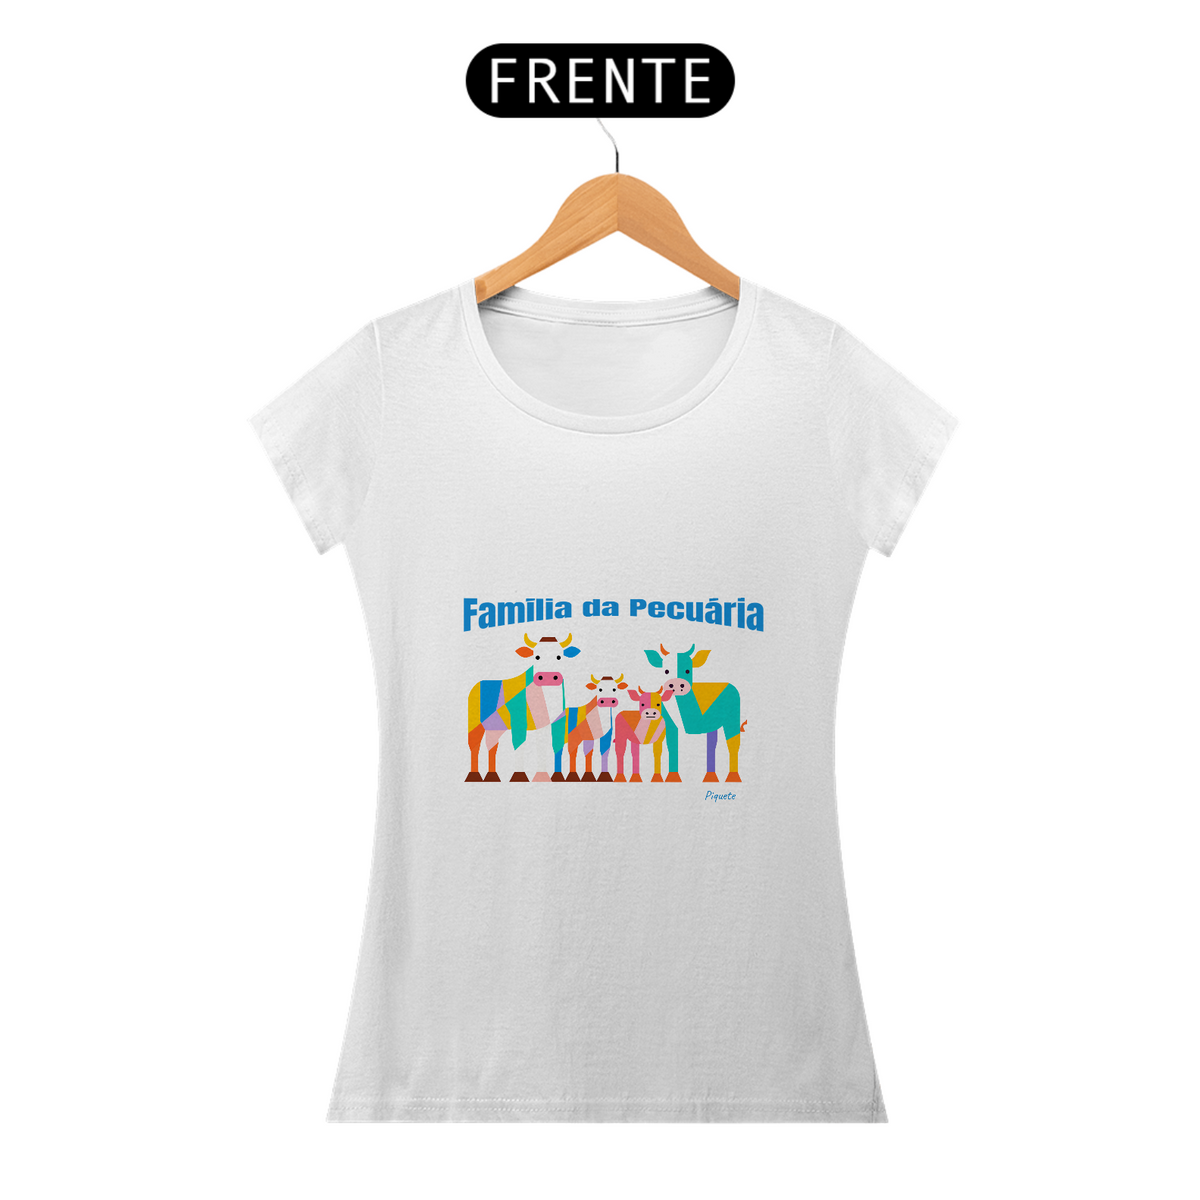 Nome do produto: Camiseta Família da Pecuária - Feminina